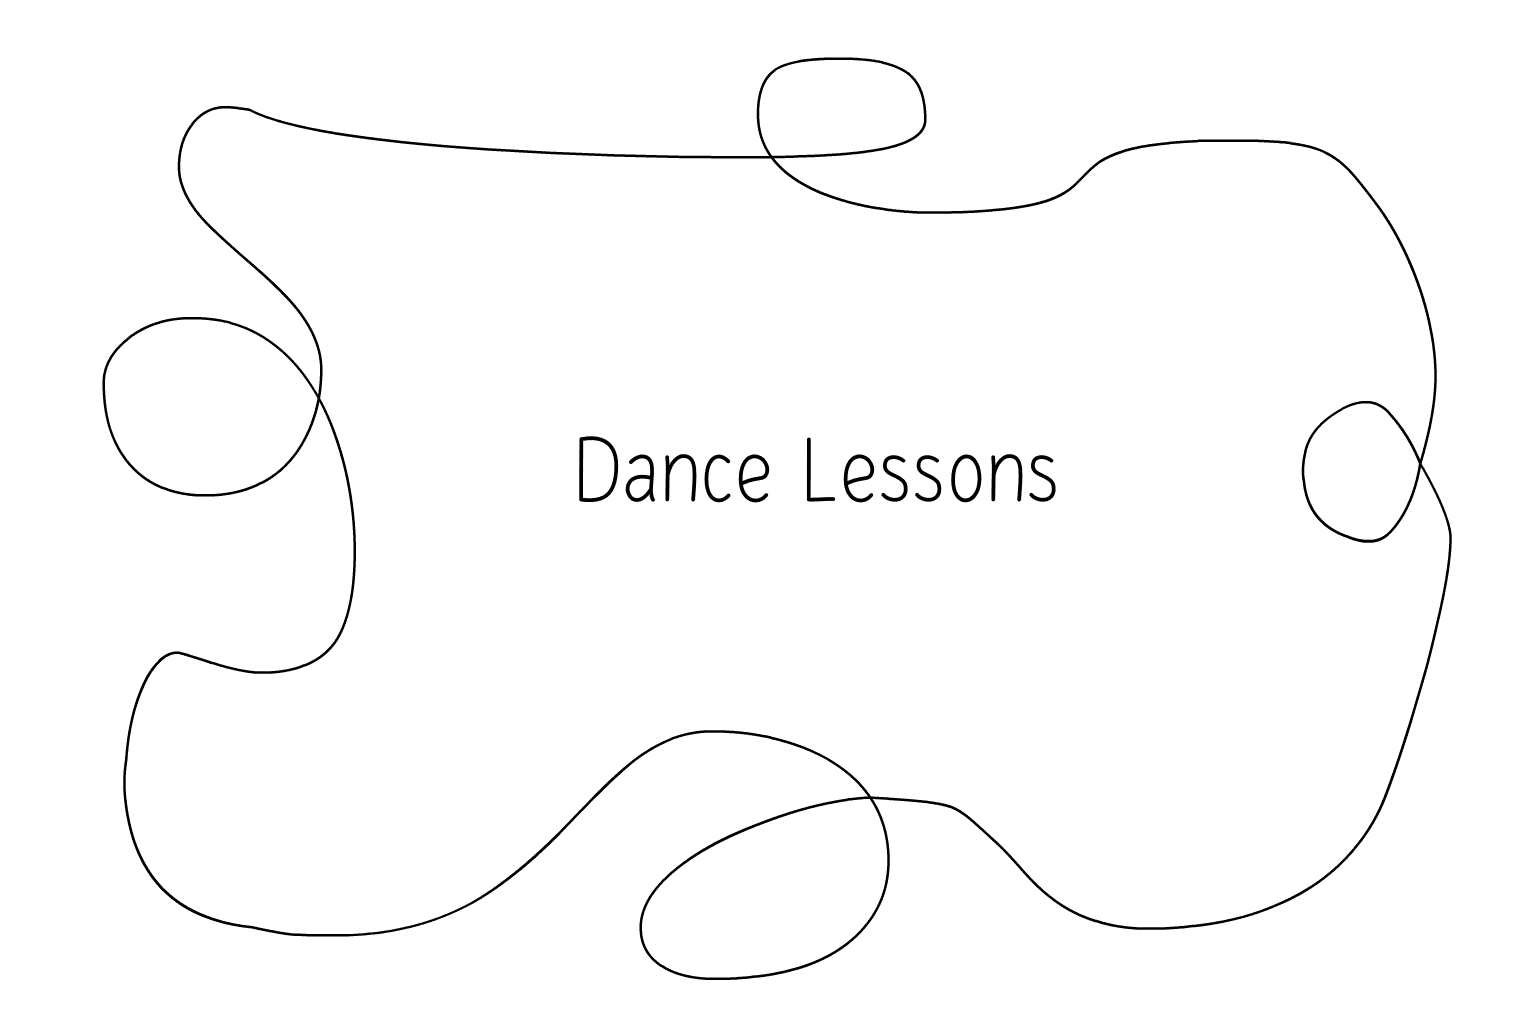 Иллюстрация уроков свадебного танца